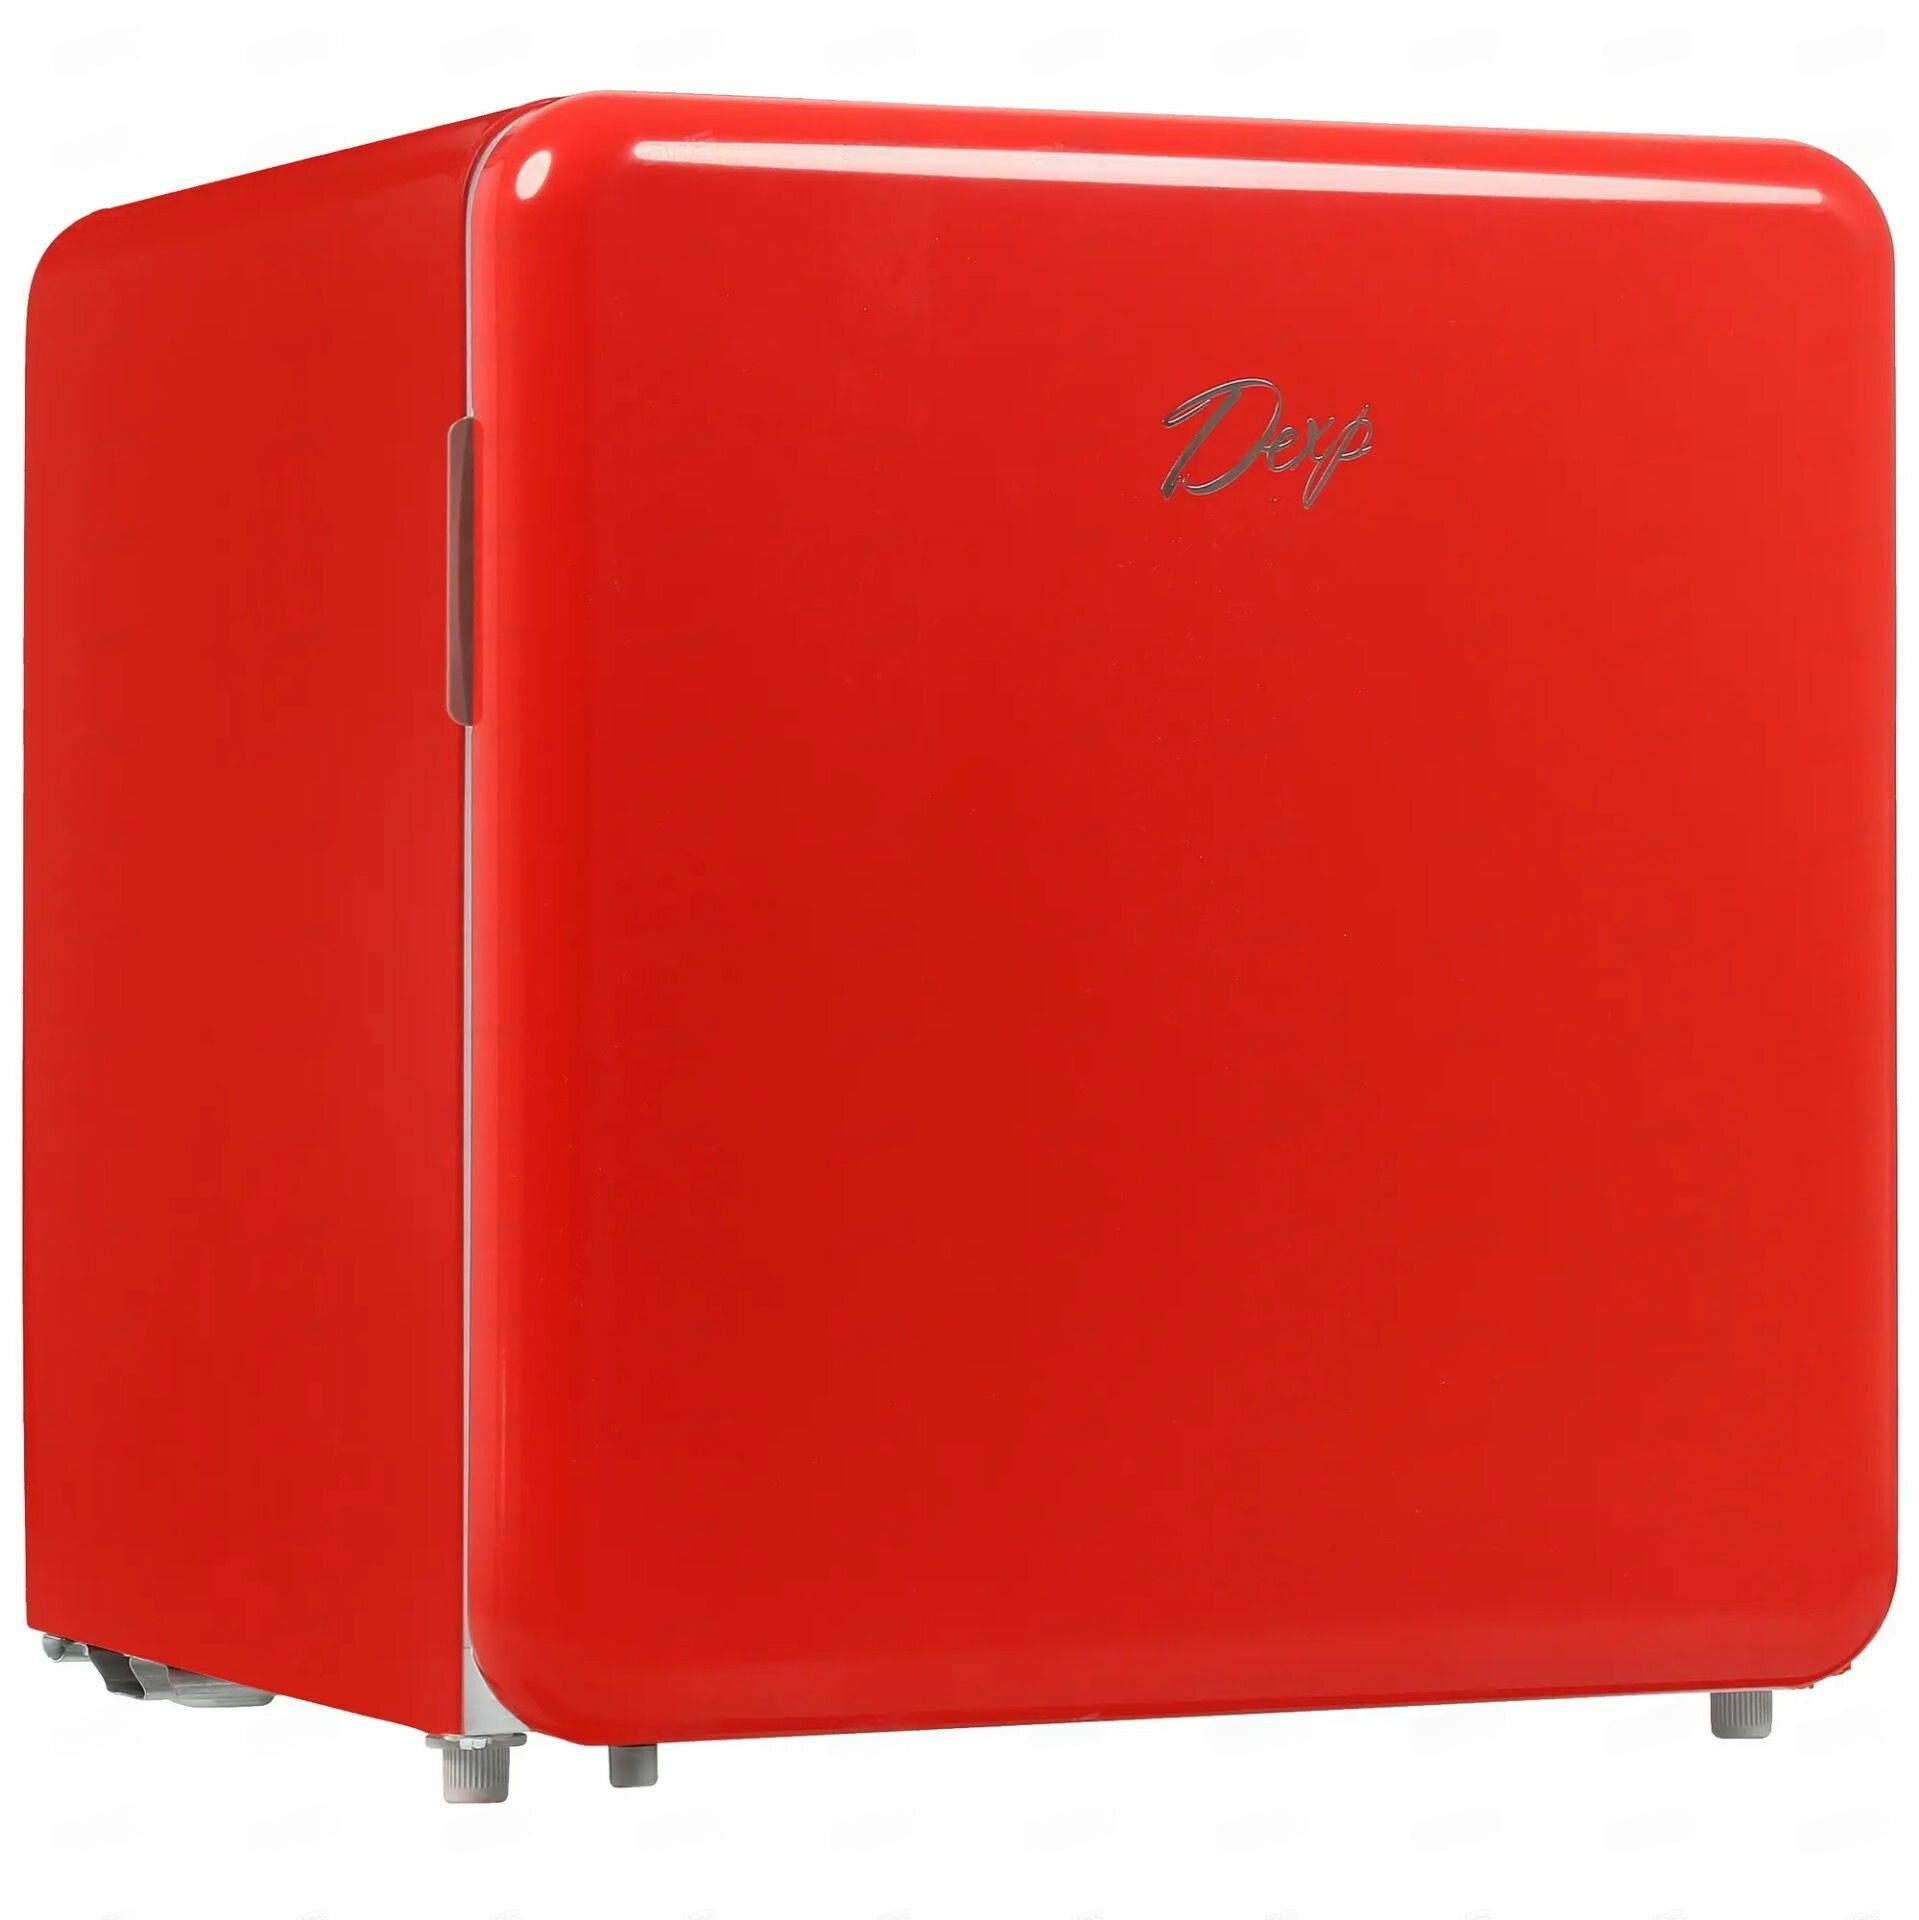 Однодверный мини холодильник компактный (гарантия целости!) красный GoodsMart 1 шт.